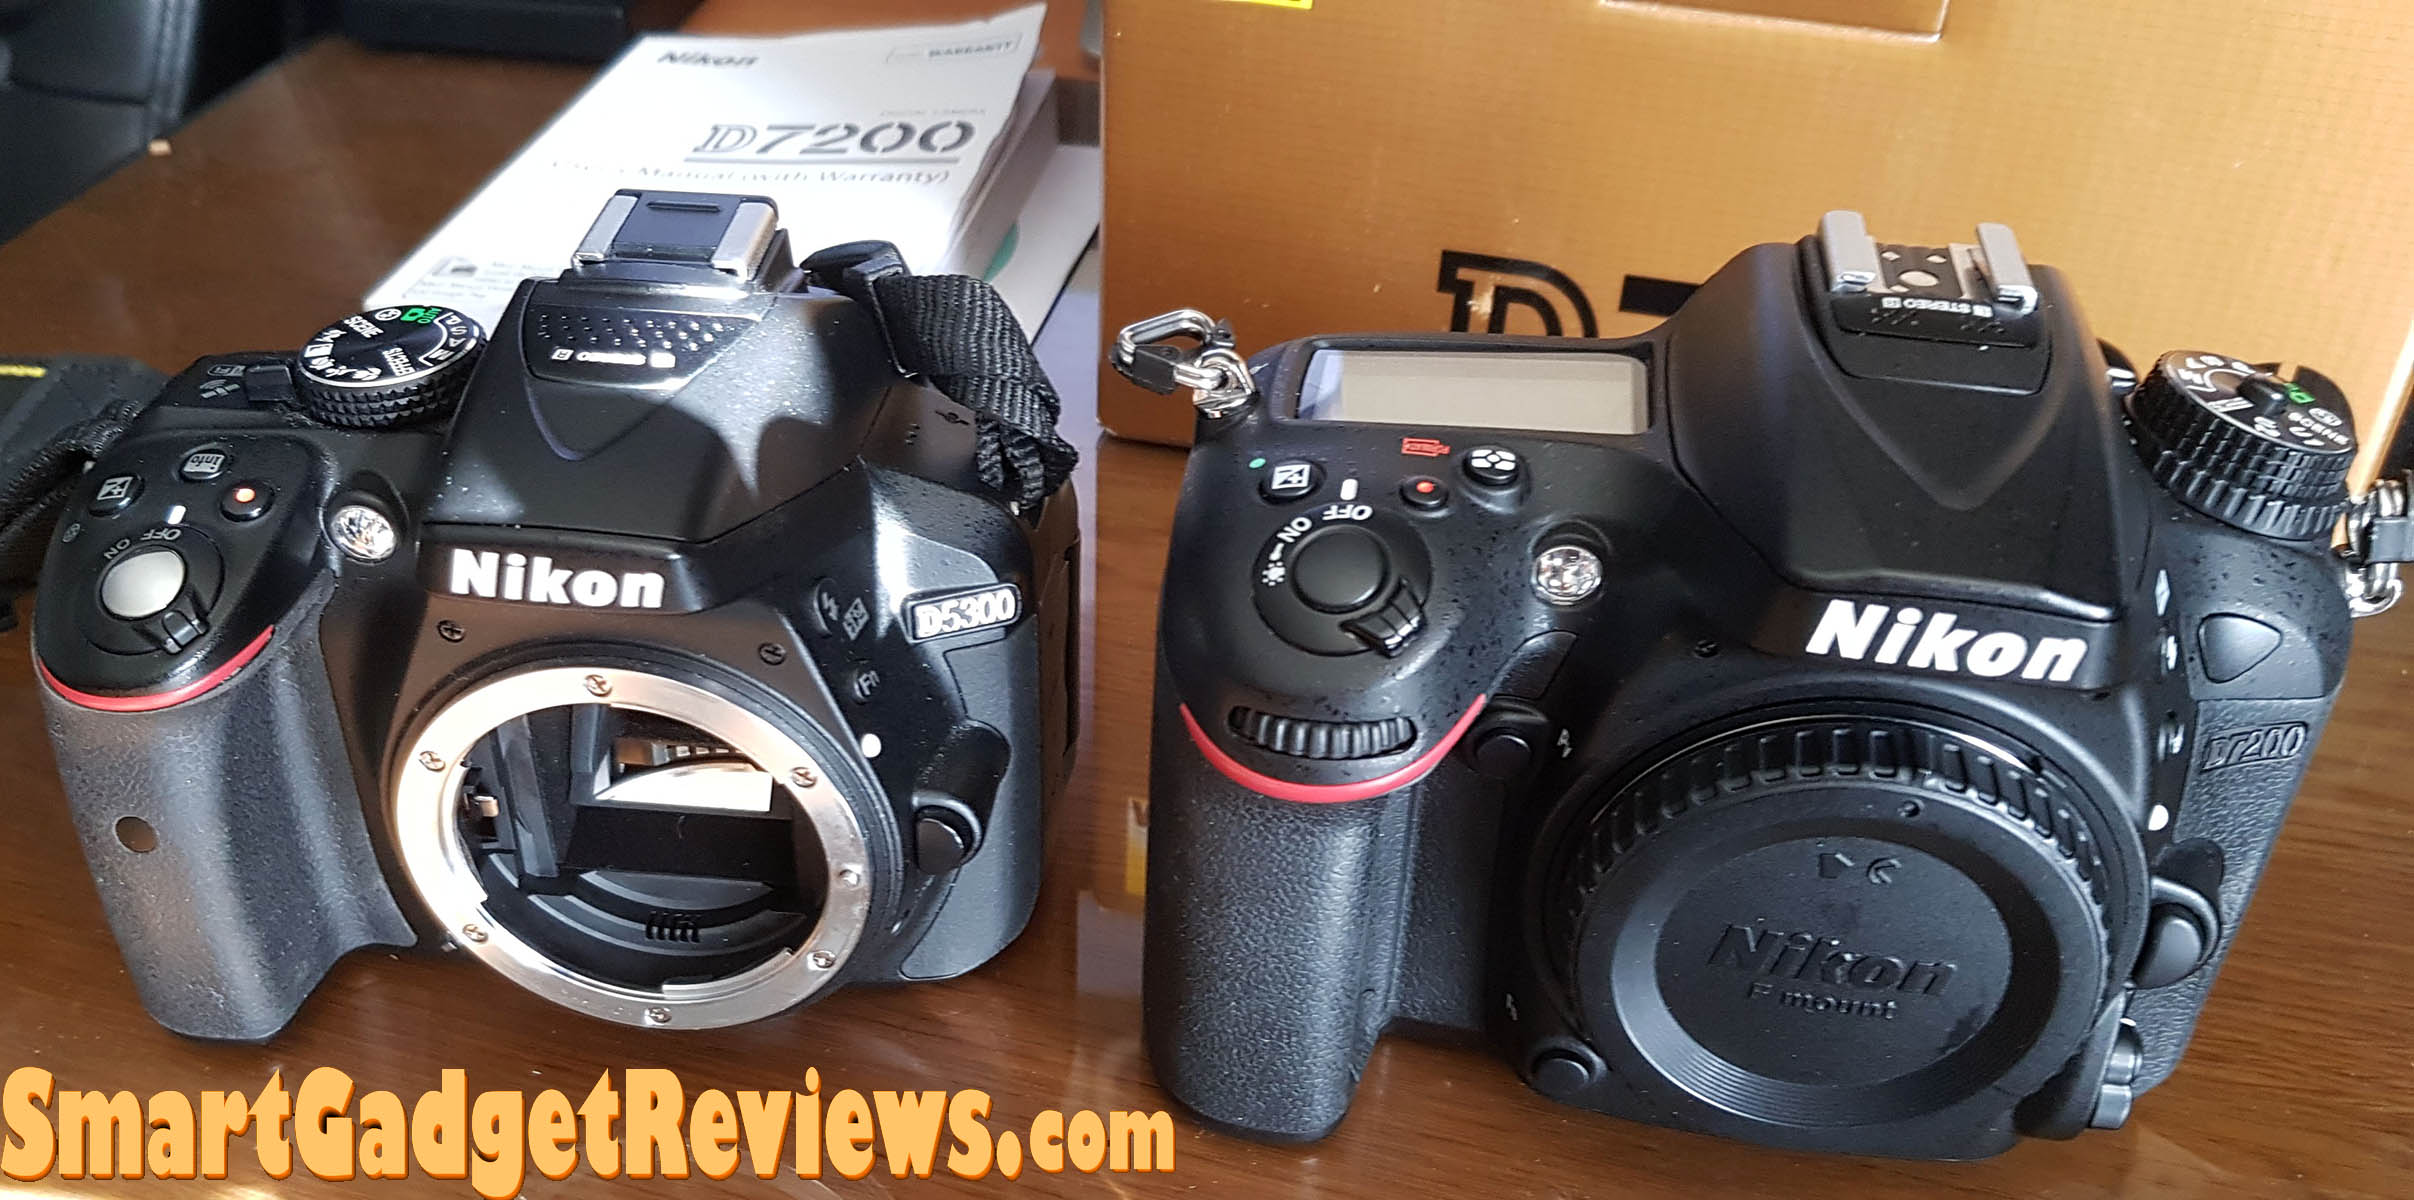 Nikon D5200 vs D7200 Digital SLR Cameras compared